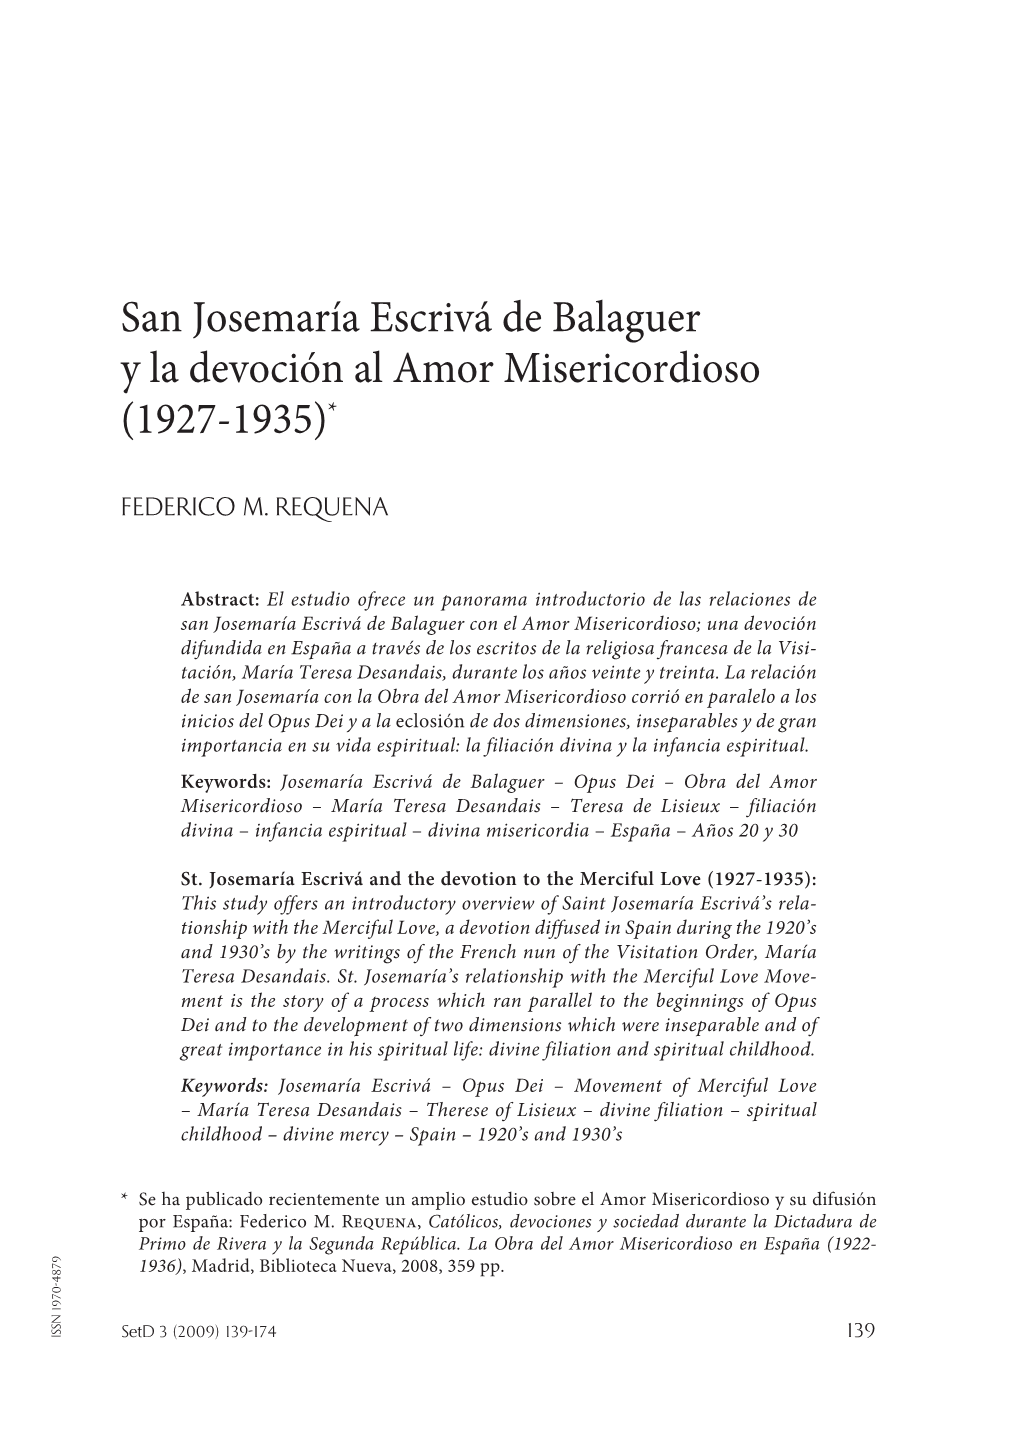 San Josemaría Escrivá De Balaguer Y La Devoción Al Amor Misericordioso (1927-1935)*